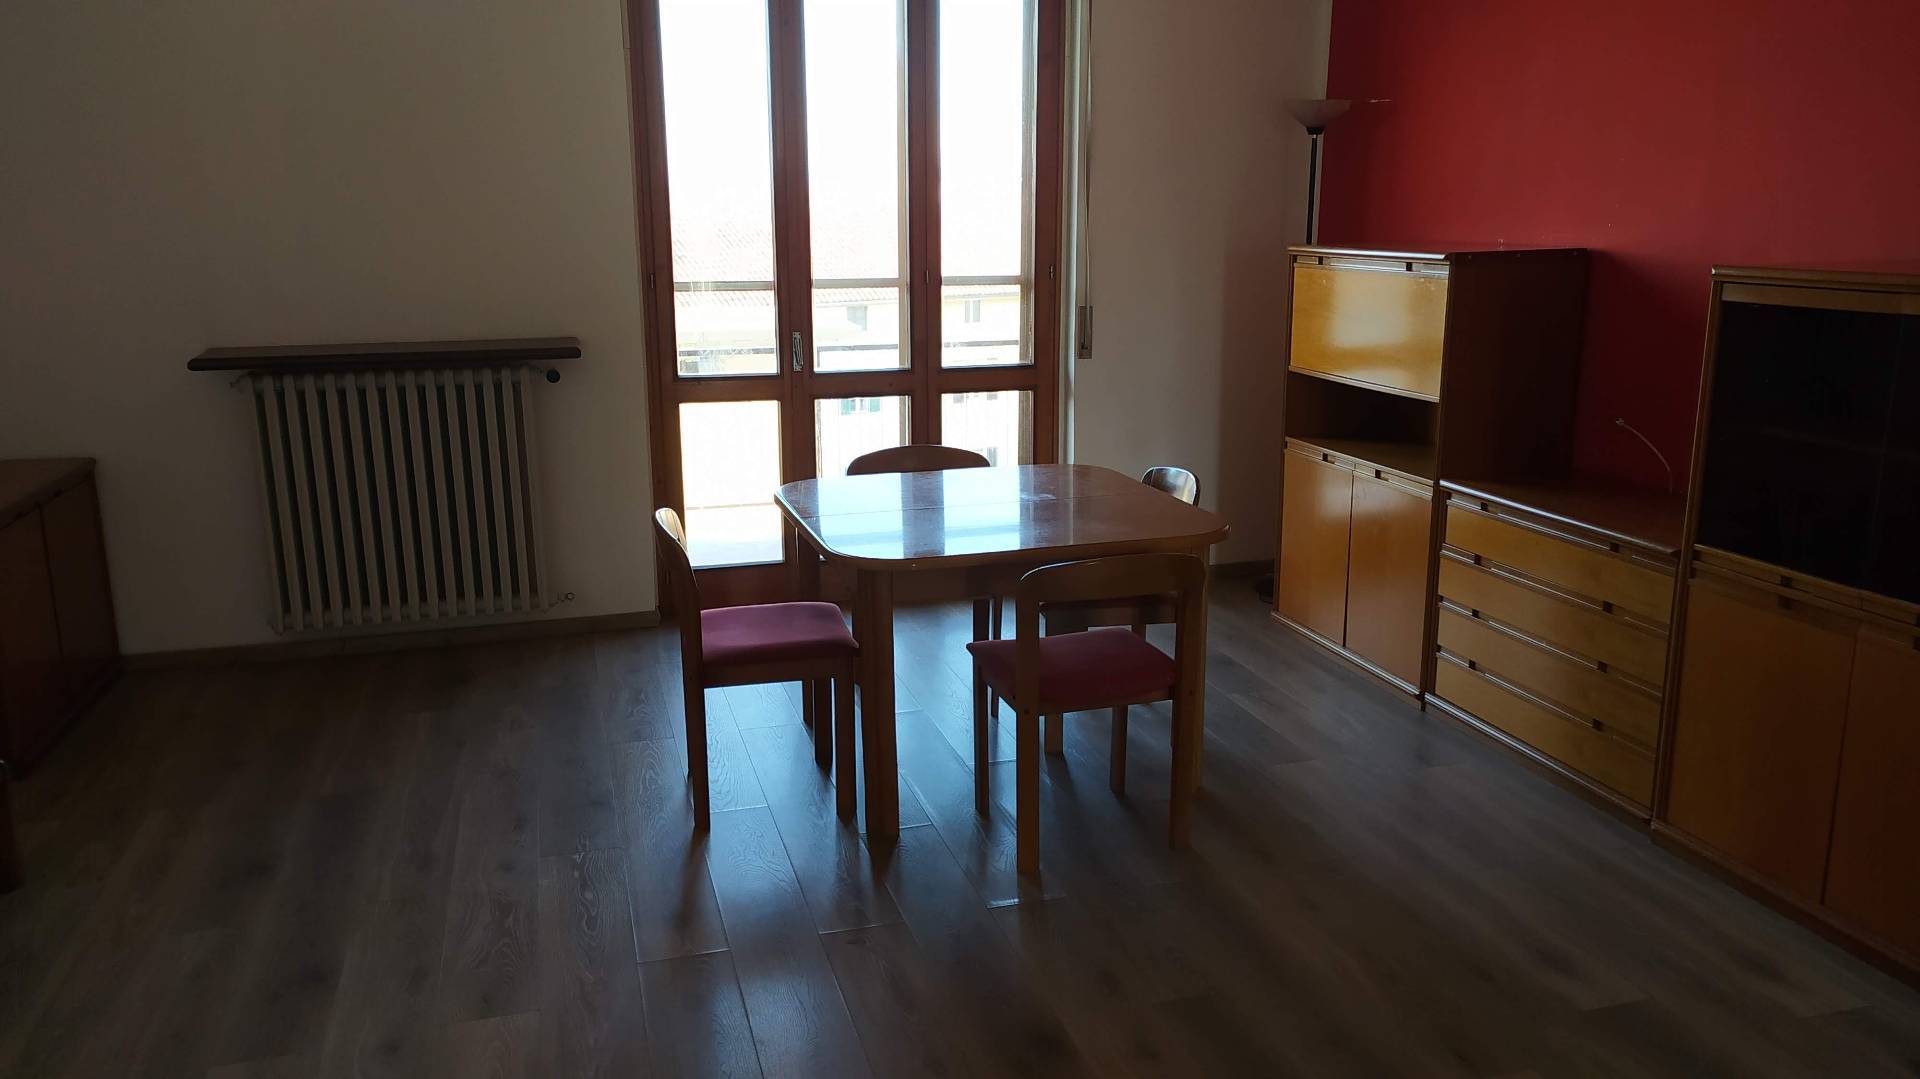 Appartamento in vendita a Morano sul Po, 4 locali, prezzo € 70.000 | PortaleAgenzieImmobiliari.it